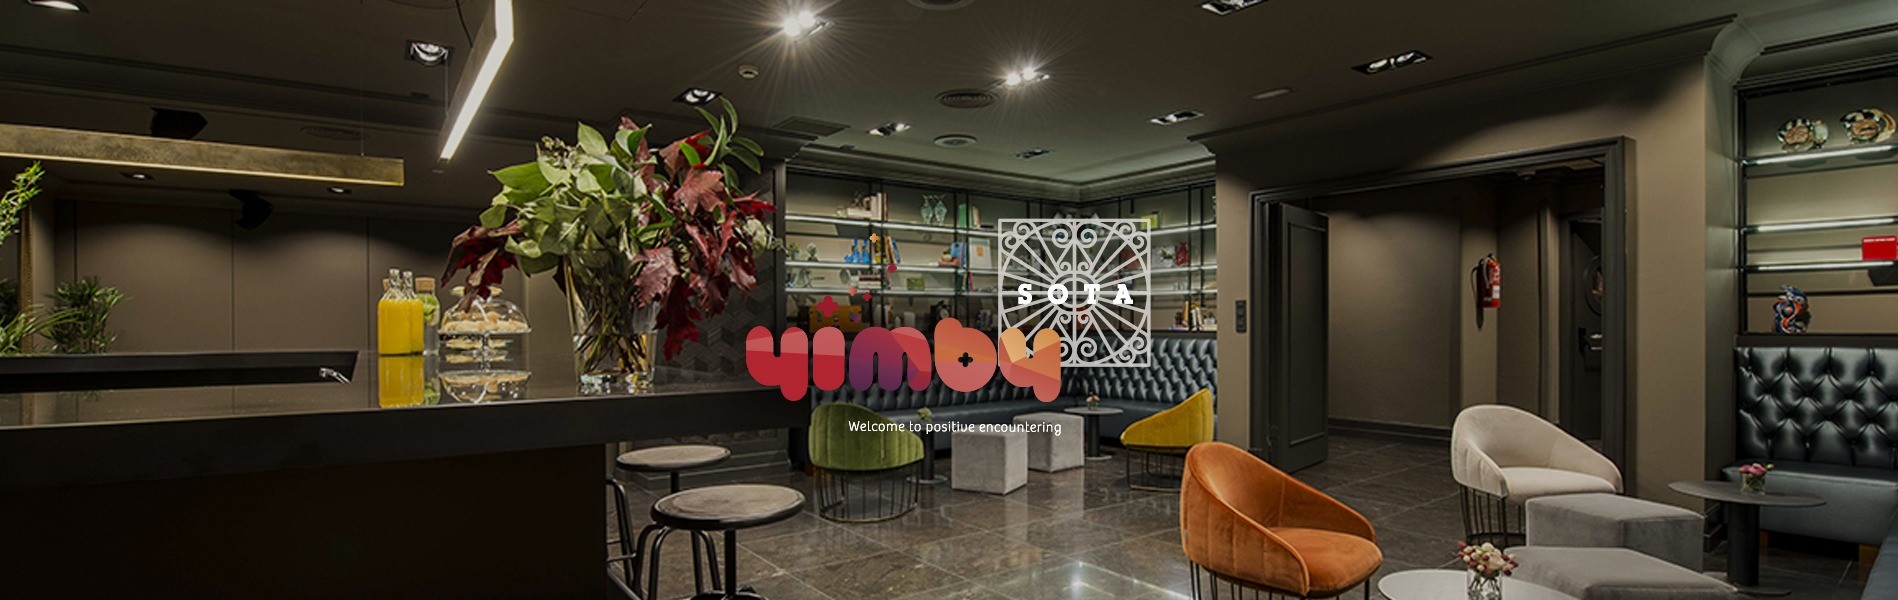 Vista panorámica de sala SMITH en YIMBY SOTA con su logo